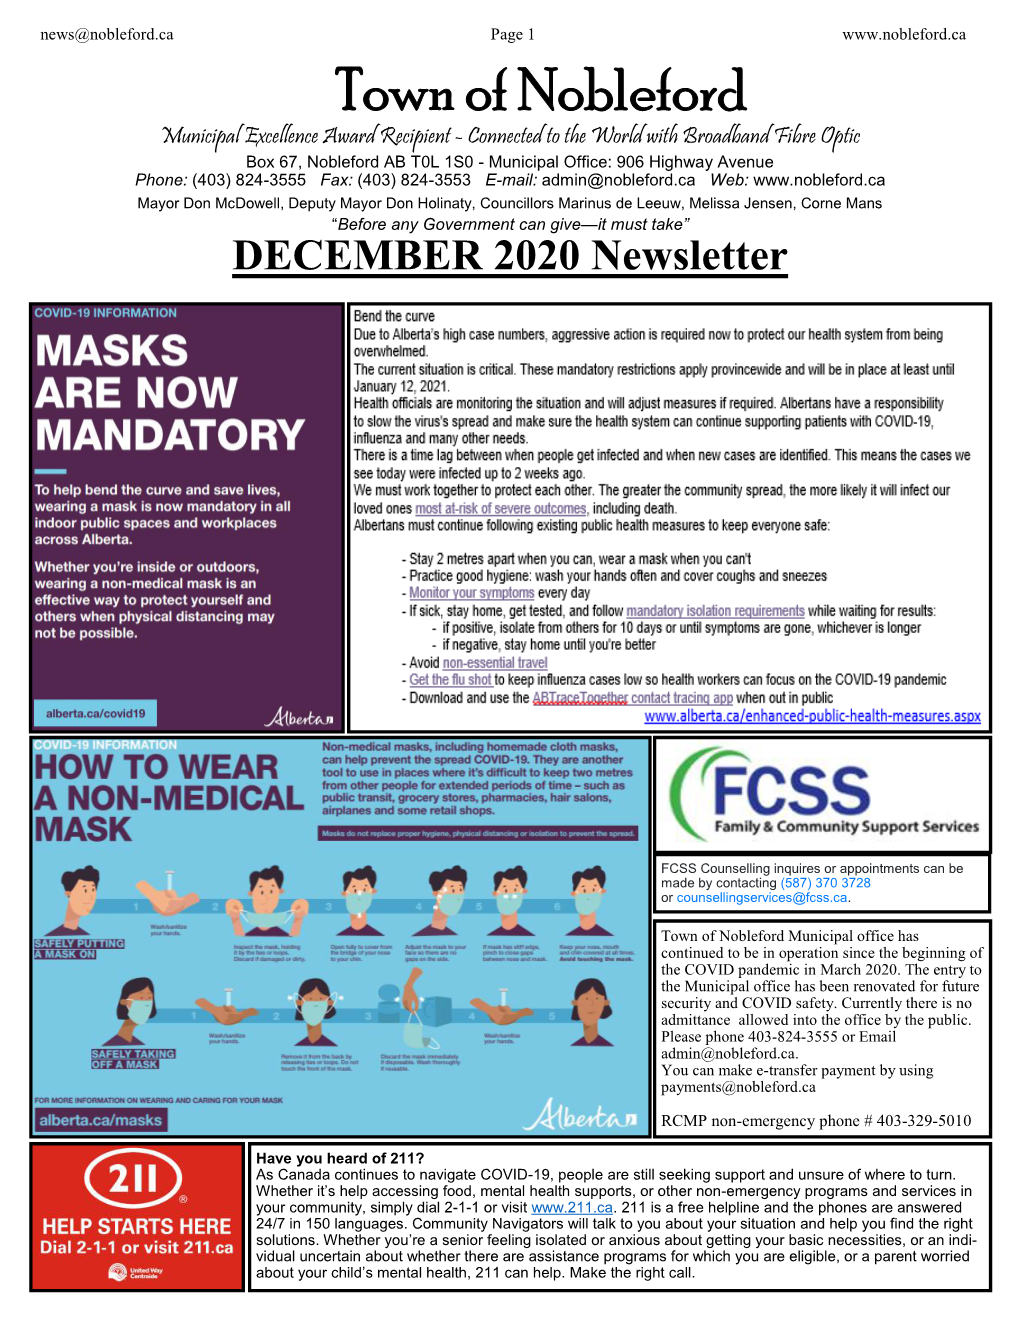 December 1, 2020 Newsletter